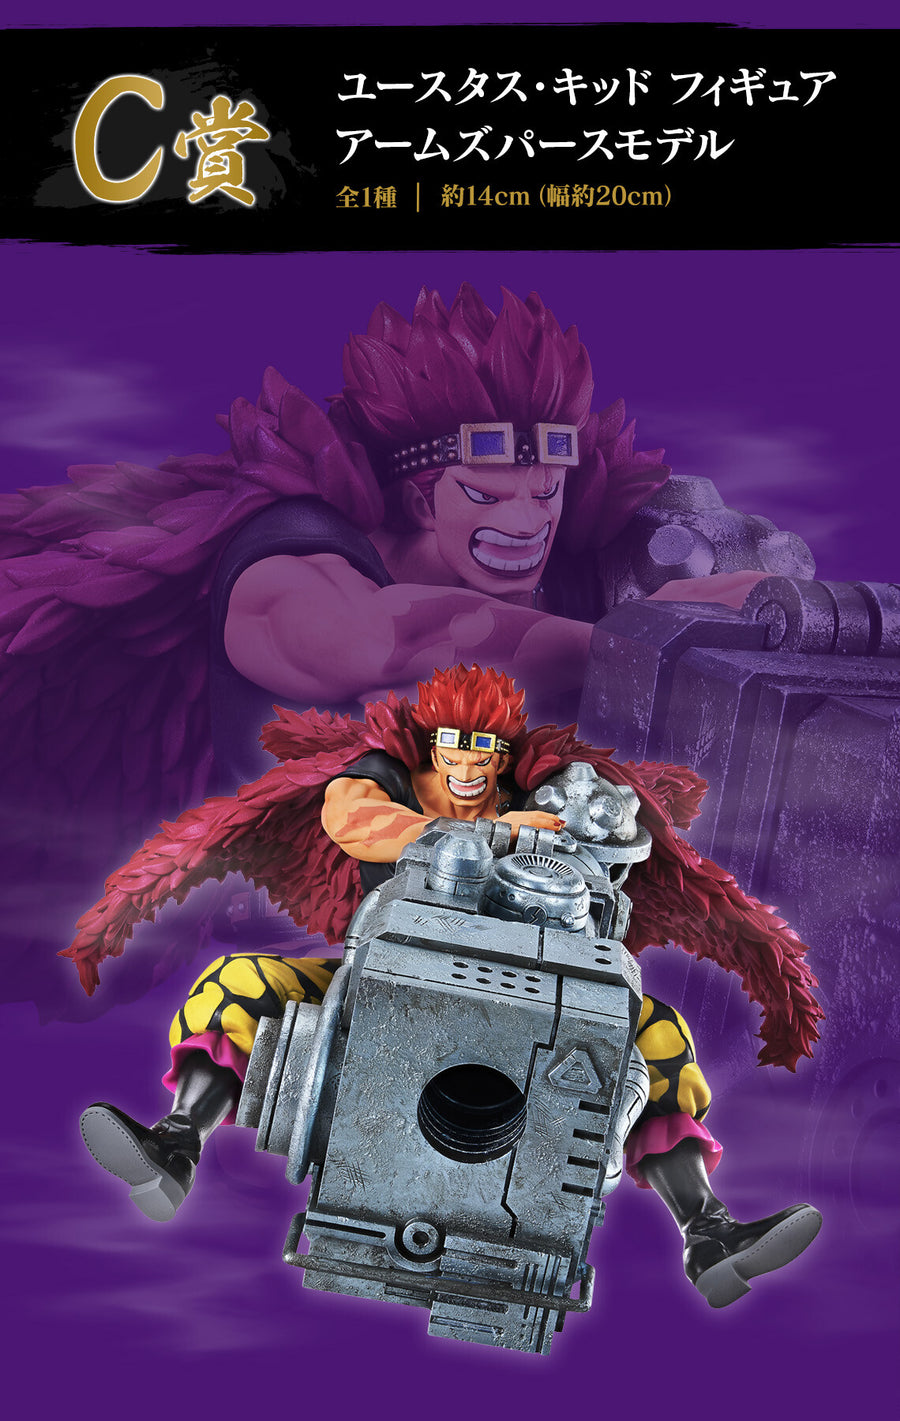 Figurine Ichiban One Piece Beyond The Level: Monkey.D.Luffy Gear 5